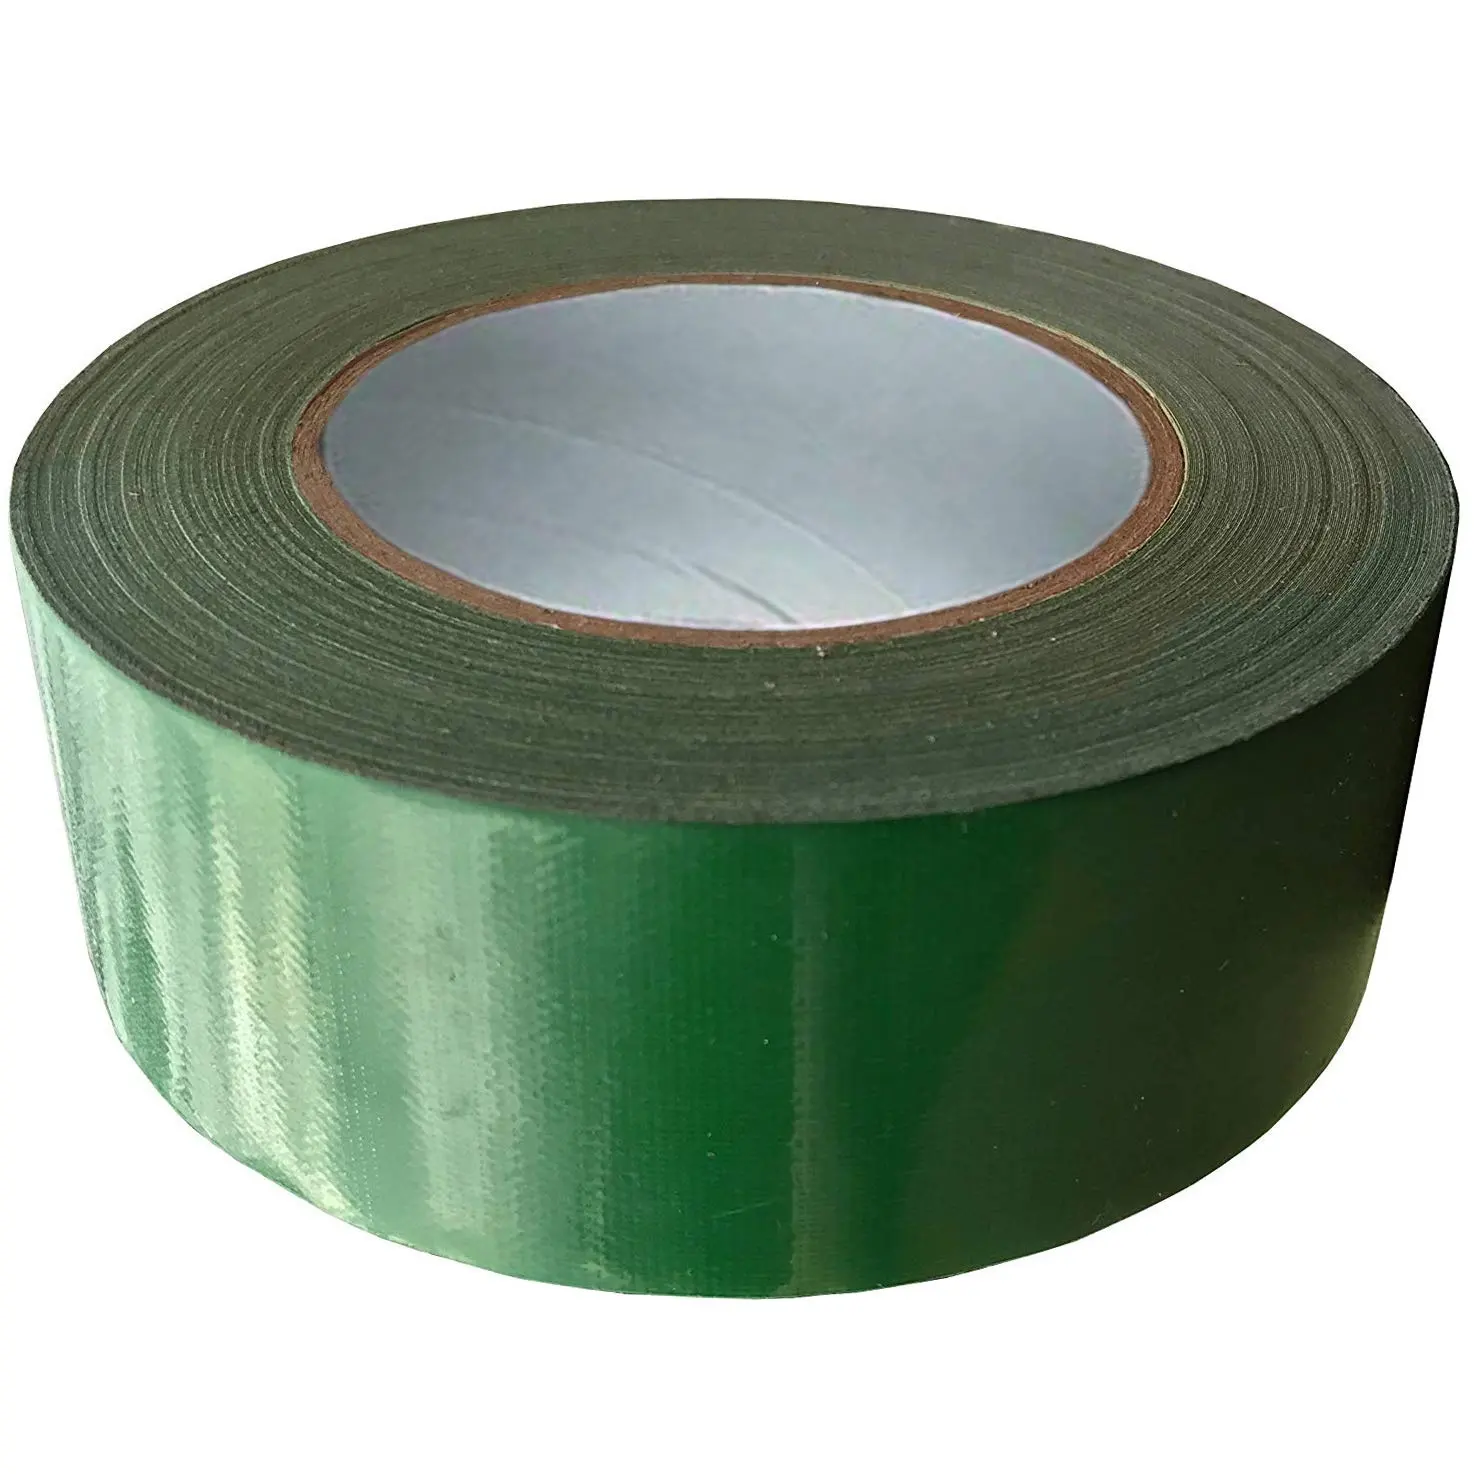 Pegamento de goma verde natural, cinta adhesiva resistente al agua de alta calidad, 35 mallas elásticas